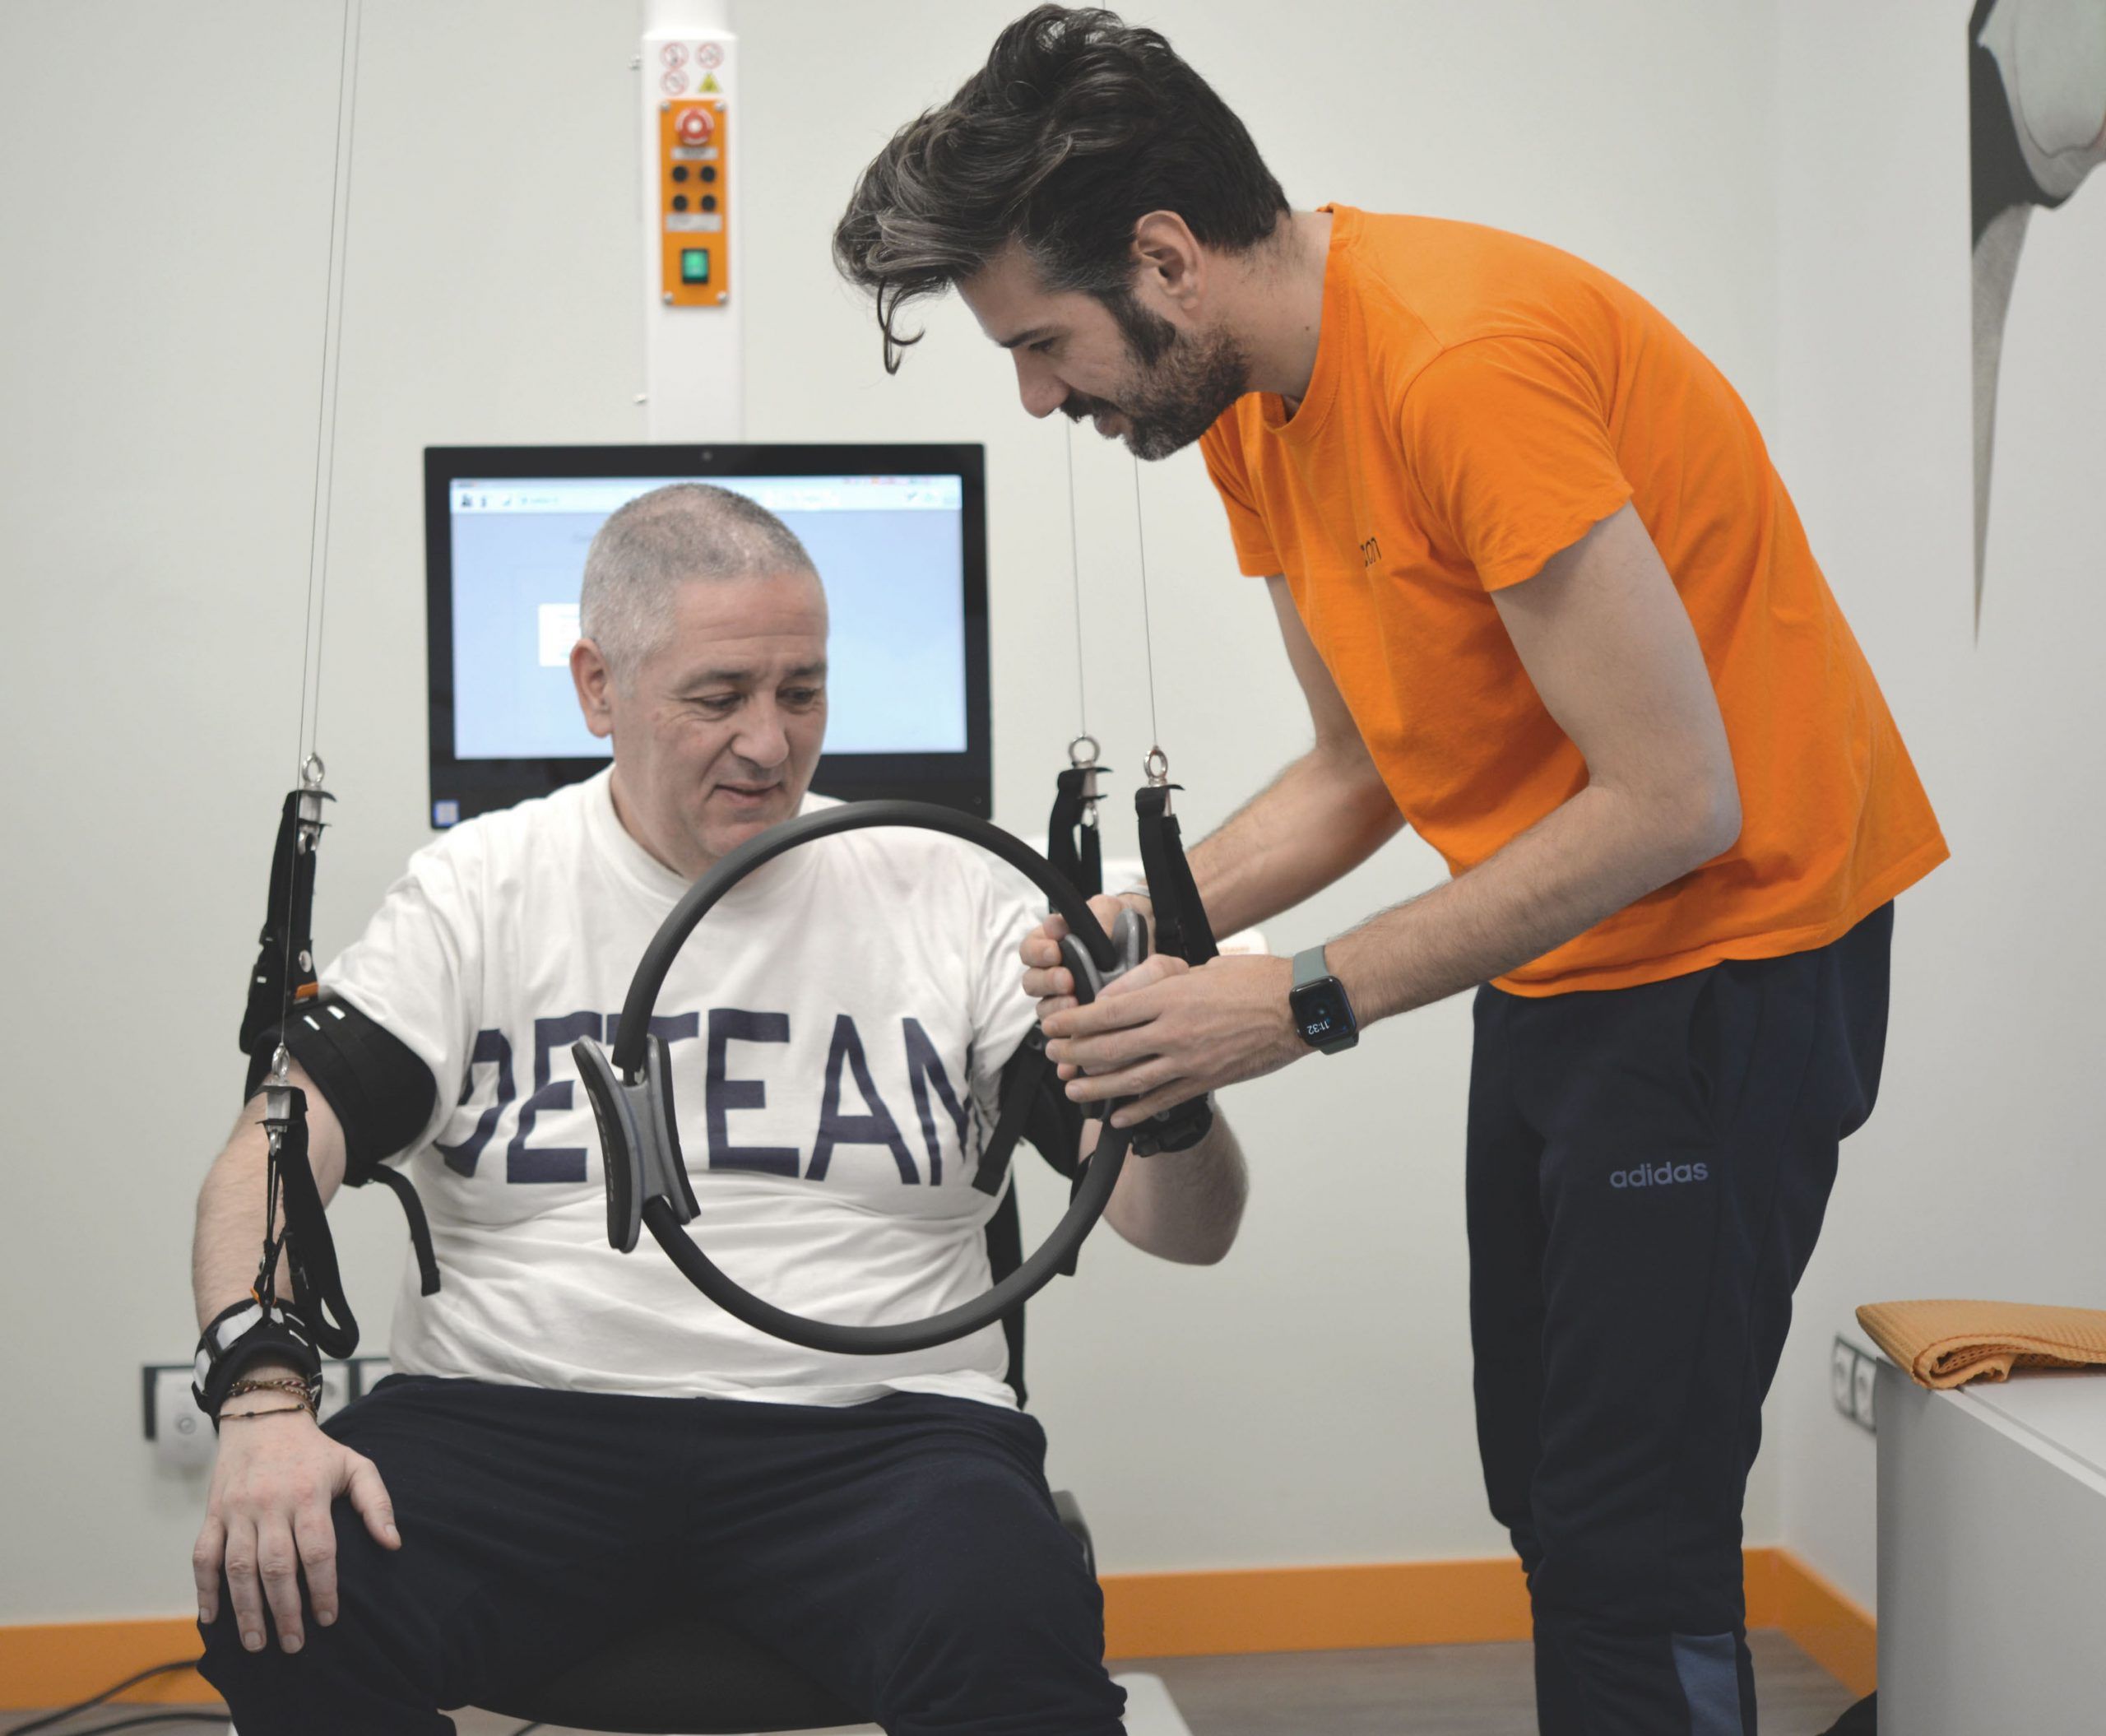 Terapia neurorehabilitacion robotica Neuron